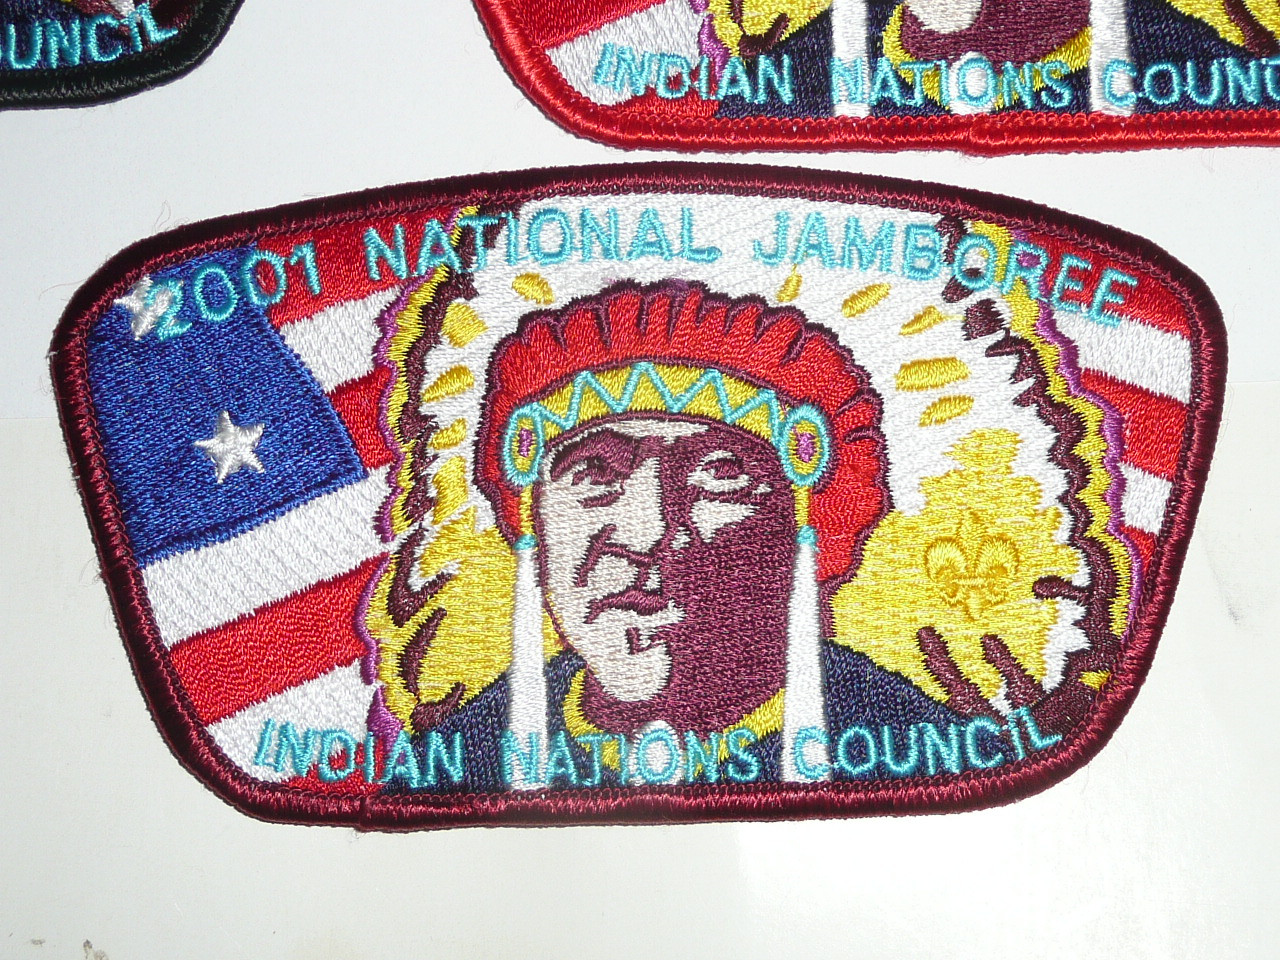 2001 National Jamboree JSP - Indian Nations Council, set of 10